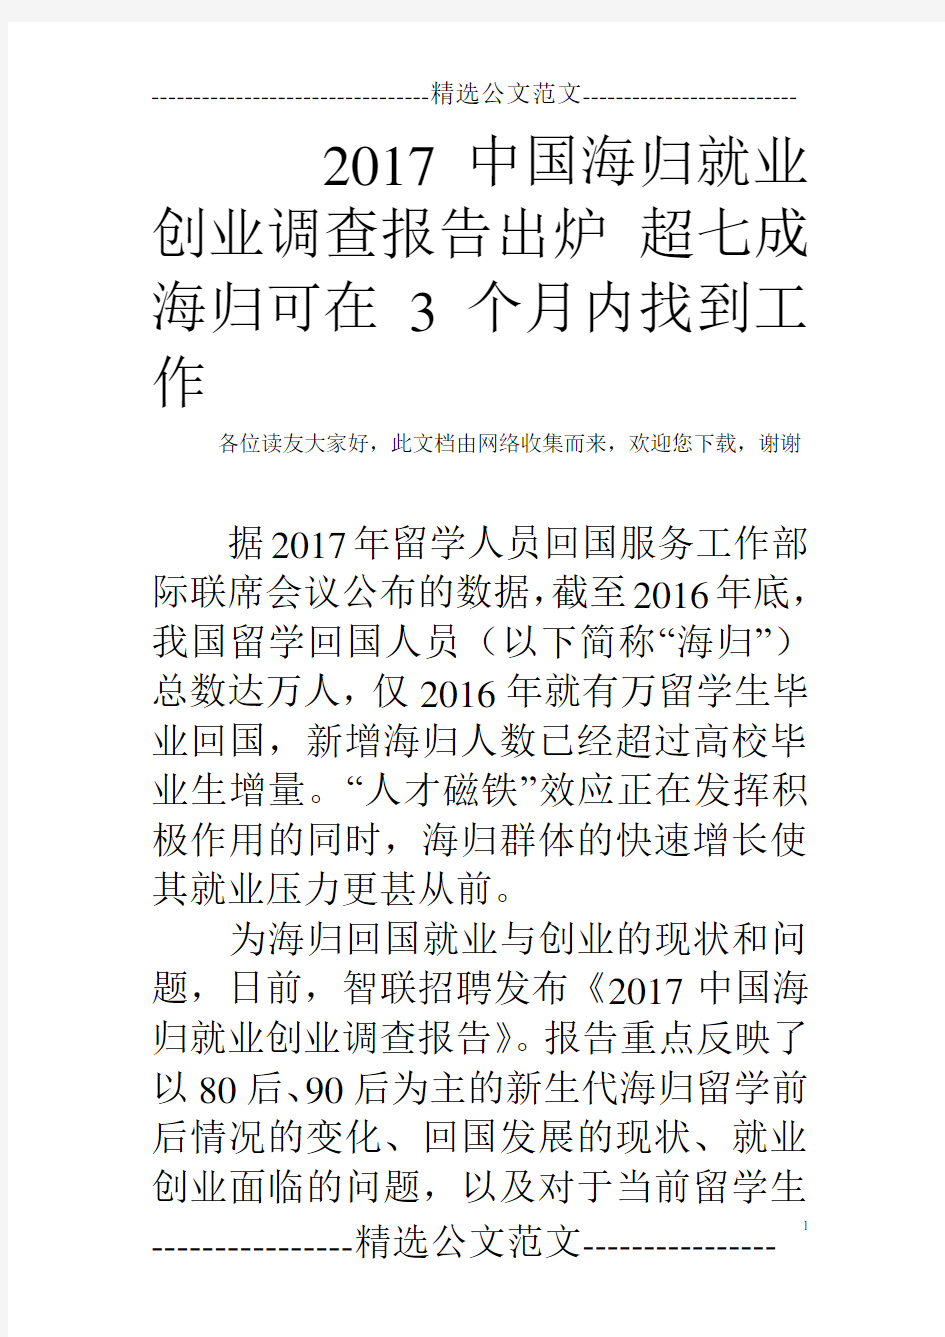 2017中国海归就业创业调查报告出炉 超七成海归可在3个月内找到工作  